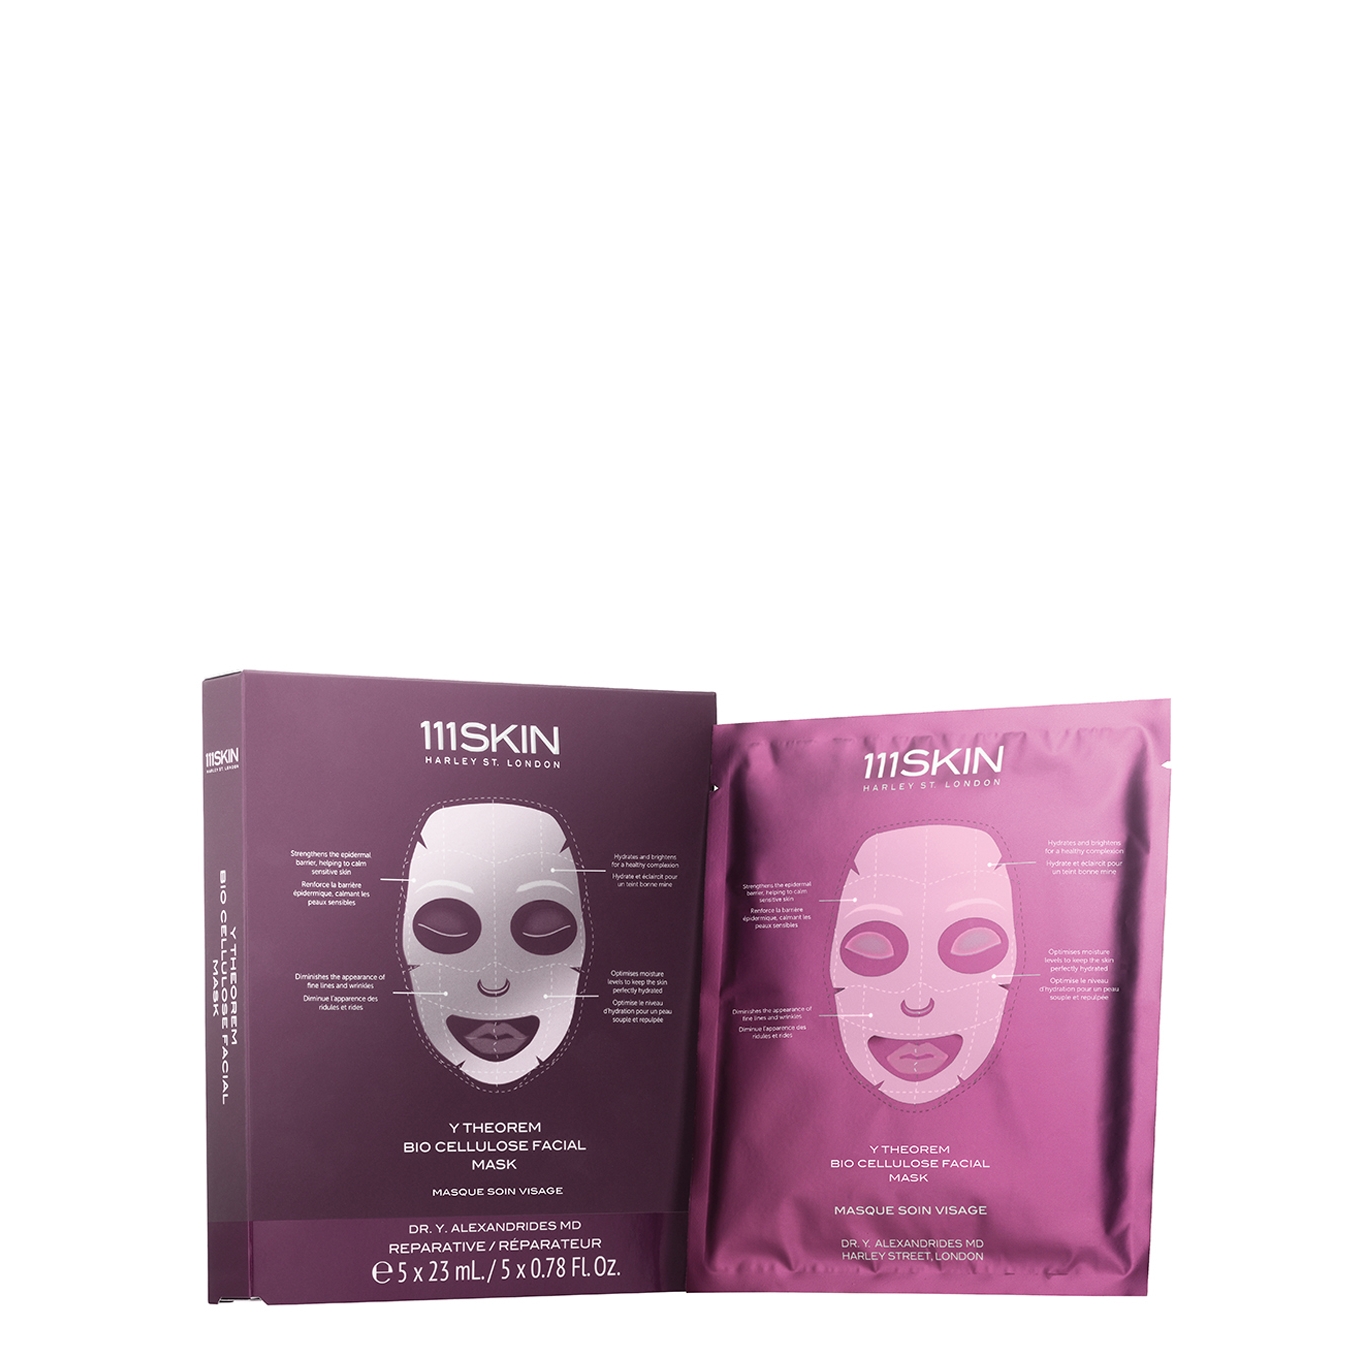 Y Theorem Bio Cellulose Facial Mask Box